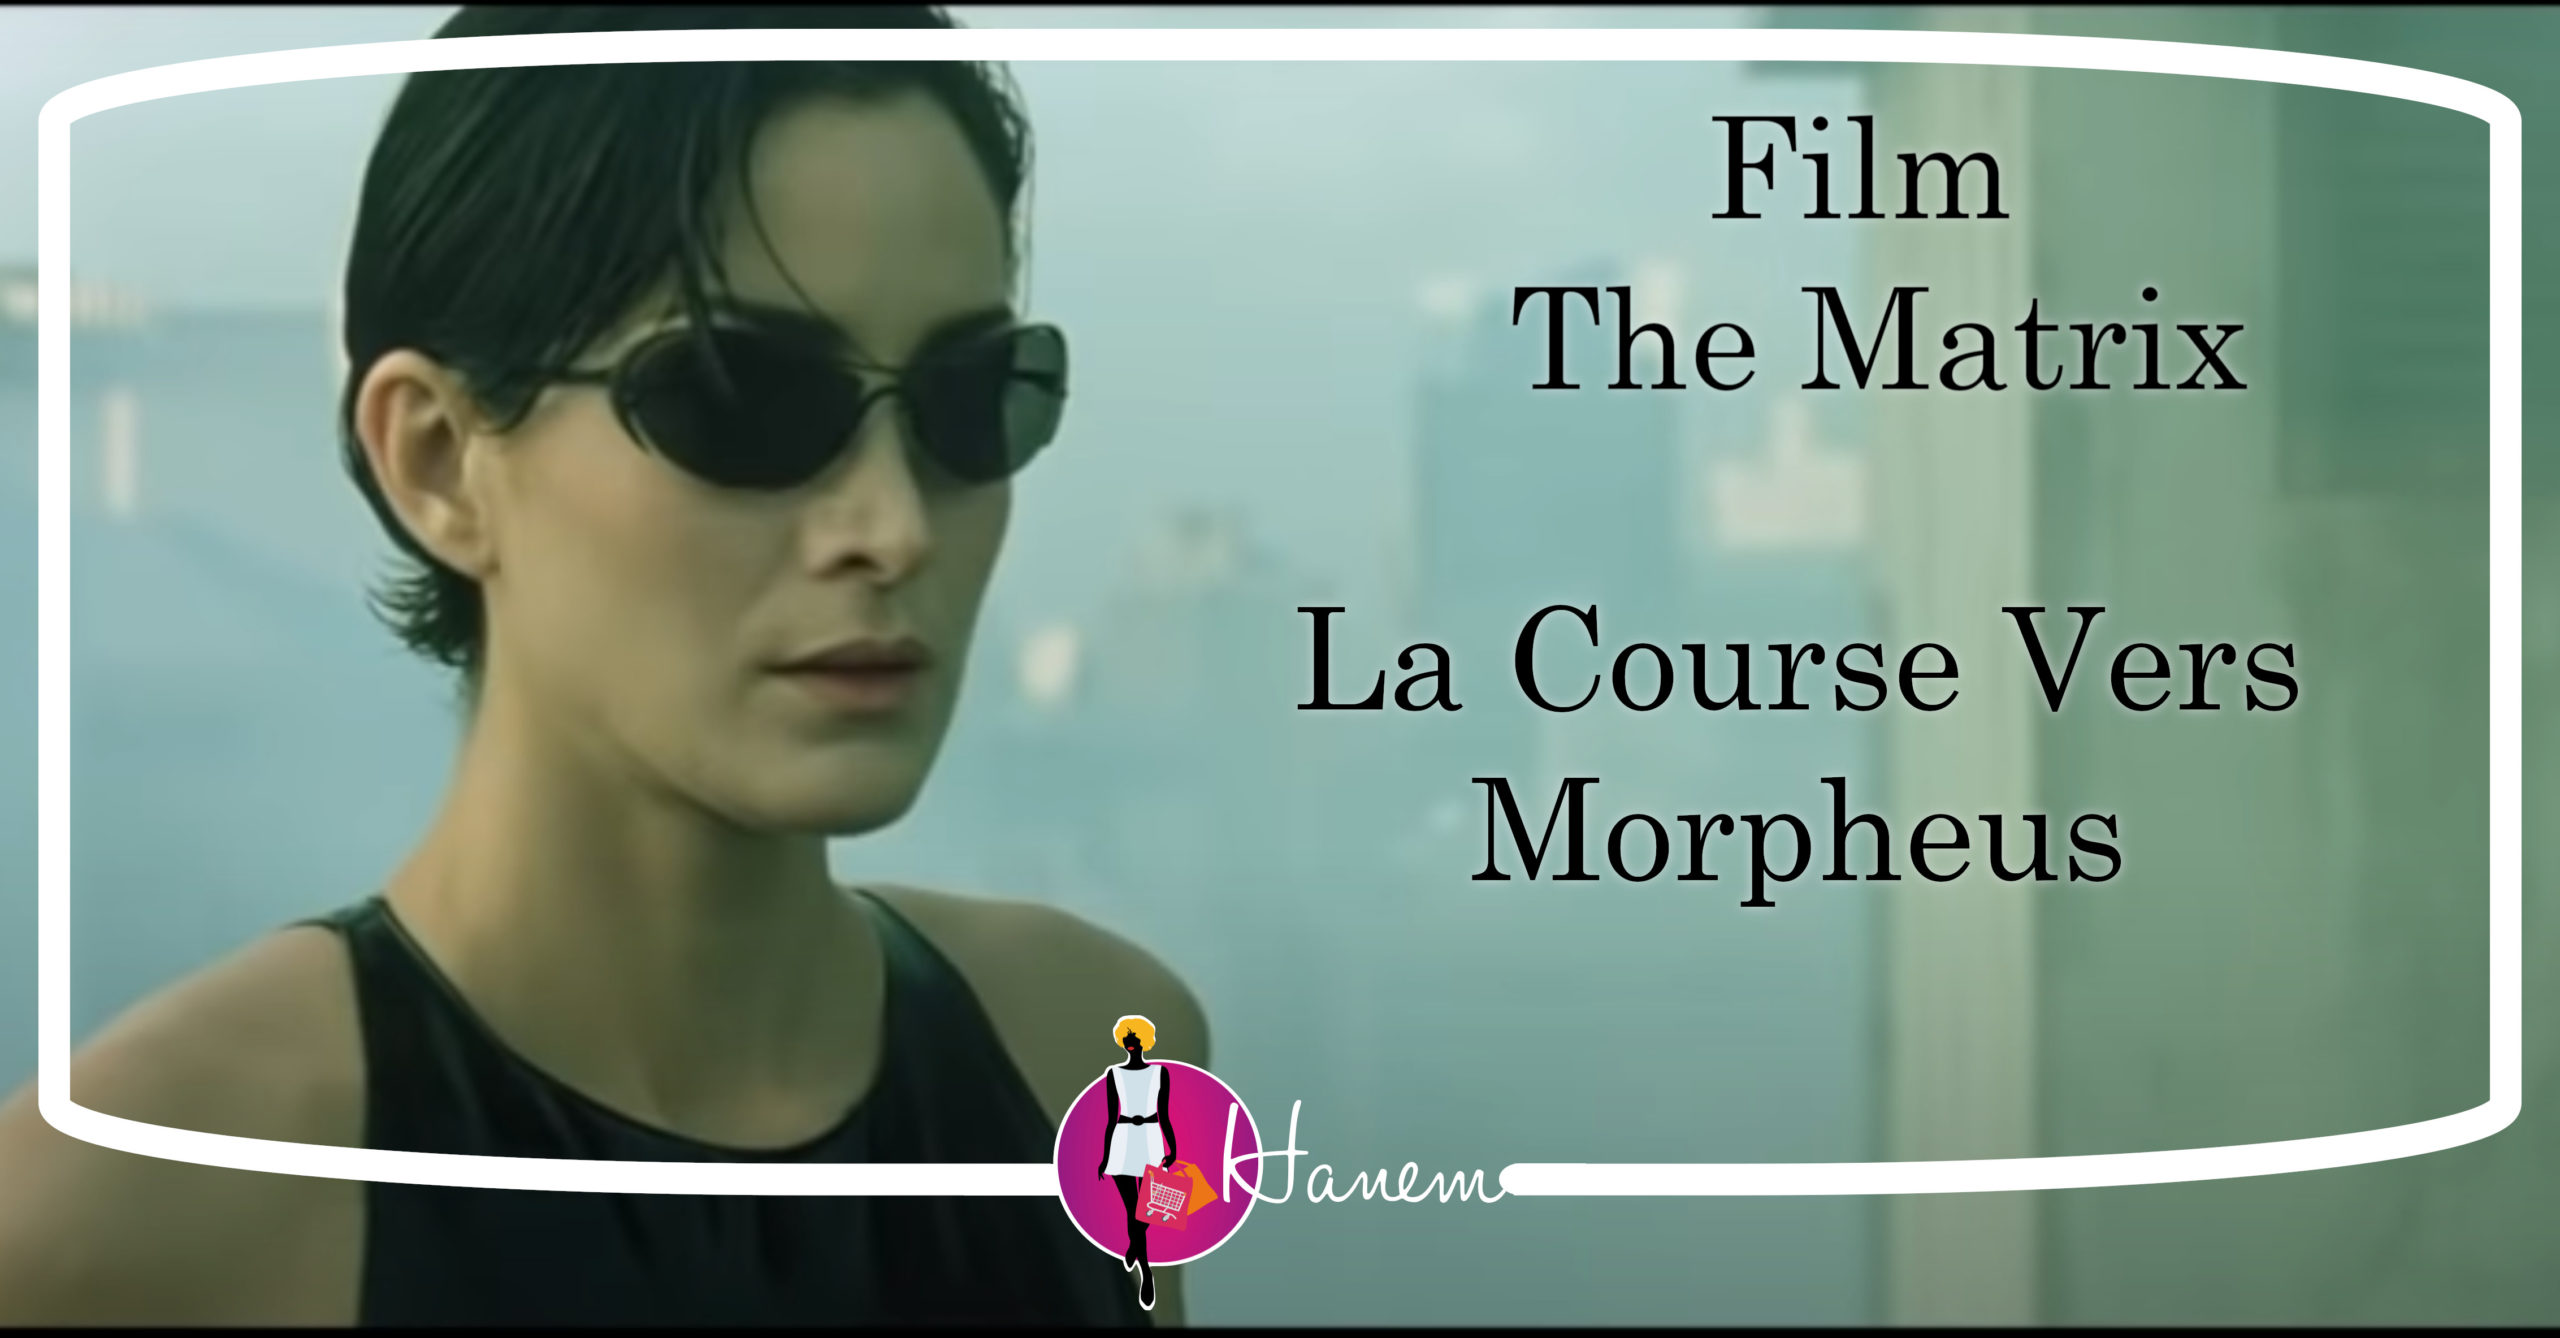 Film The Matrix La Course Vers Morpheus